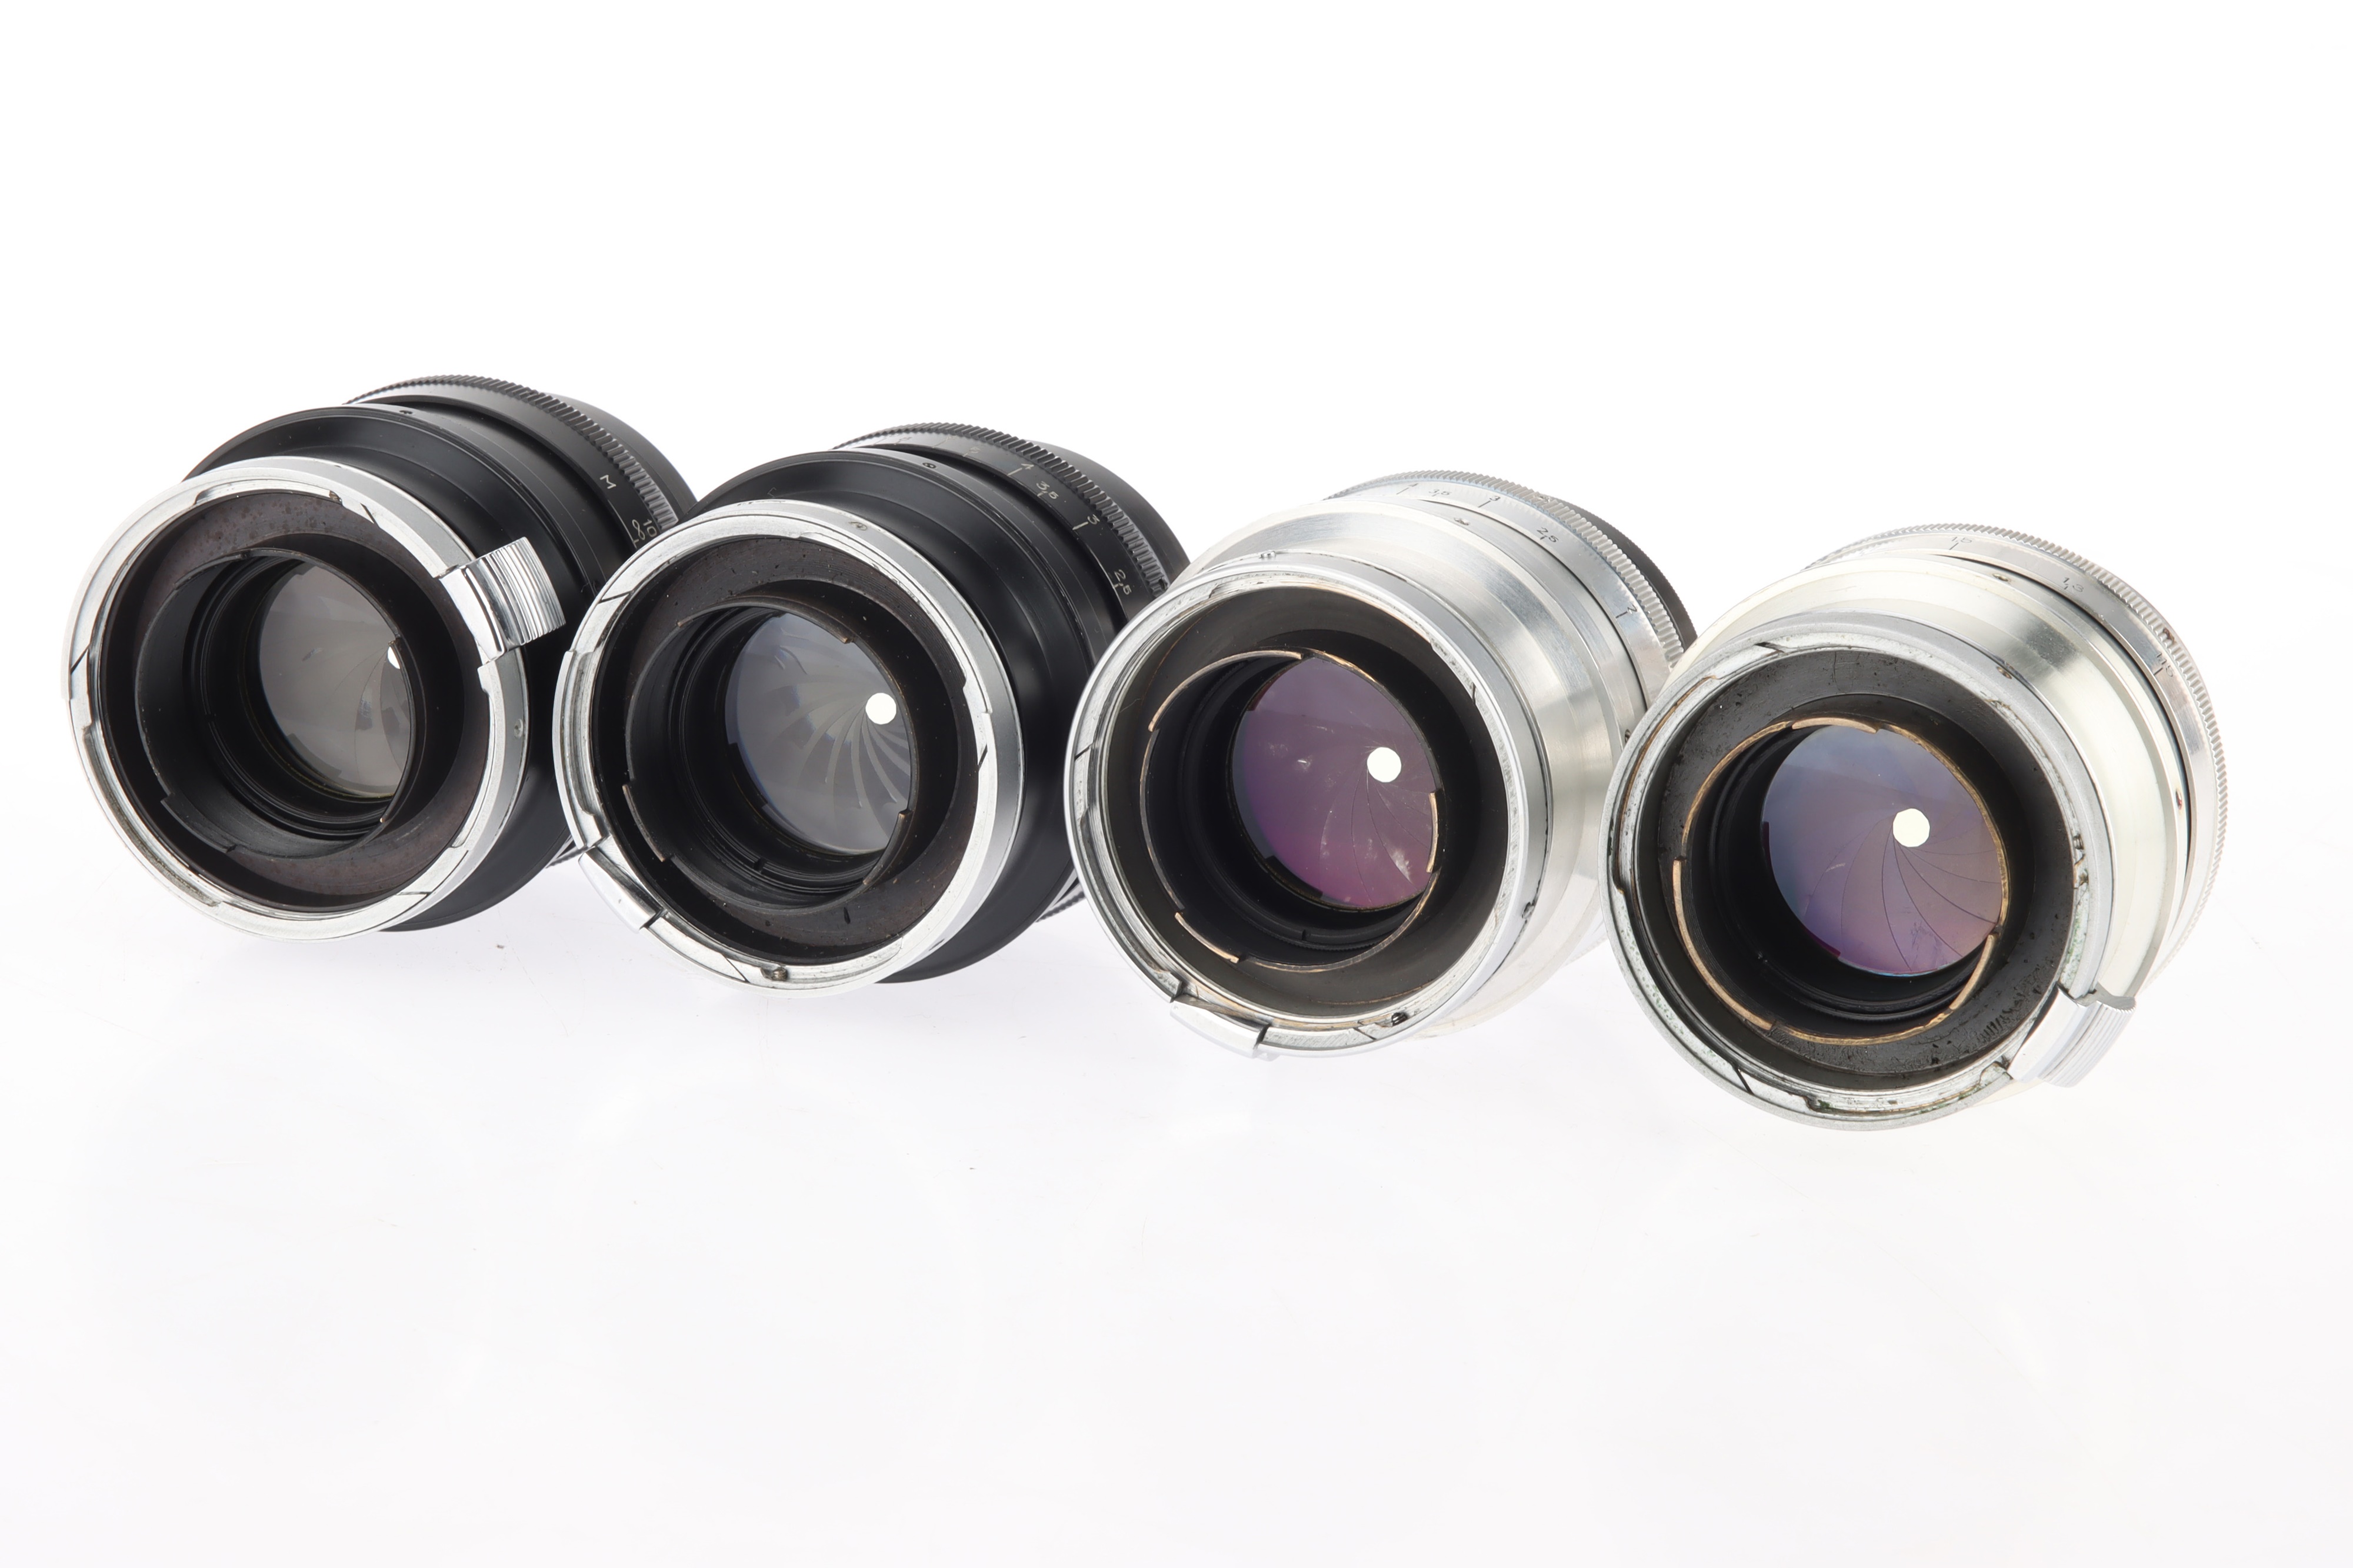 Four Jupiter-9 f/2 85mm Rangefinder Camera Lenses, - Image 3 of 3